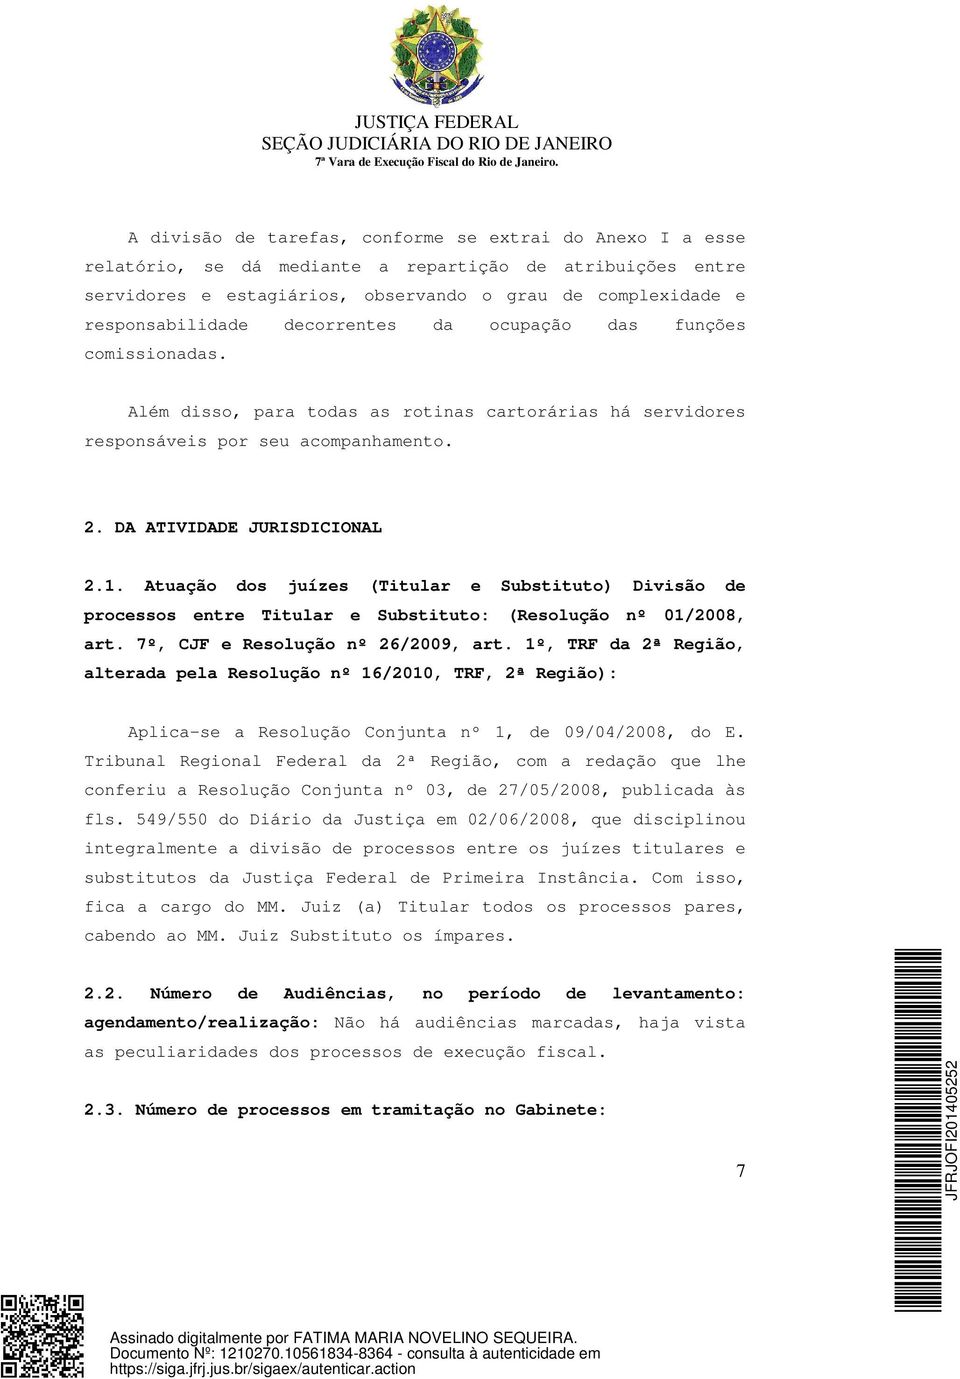 Atuação dos juízes (Titular e Substituto) Divisão de processos entre Titular e Substituto: (Resolução nº 01/2008, art. 7º, CJF e Resolução nº 26/2009, art.